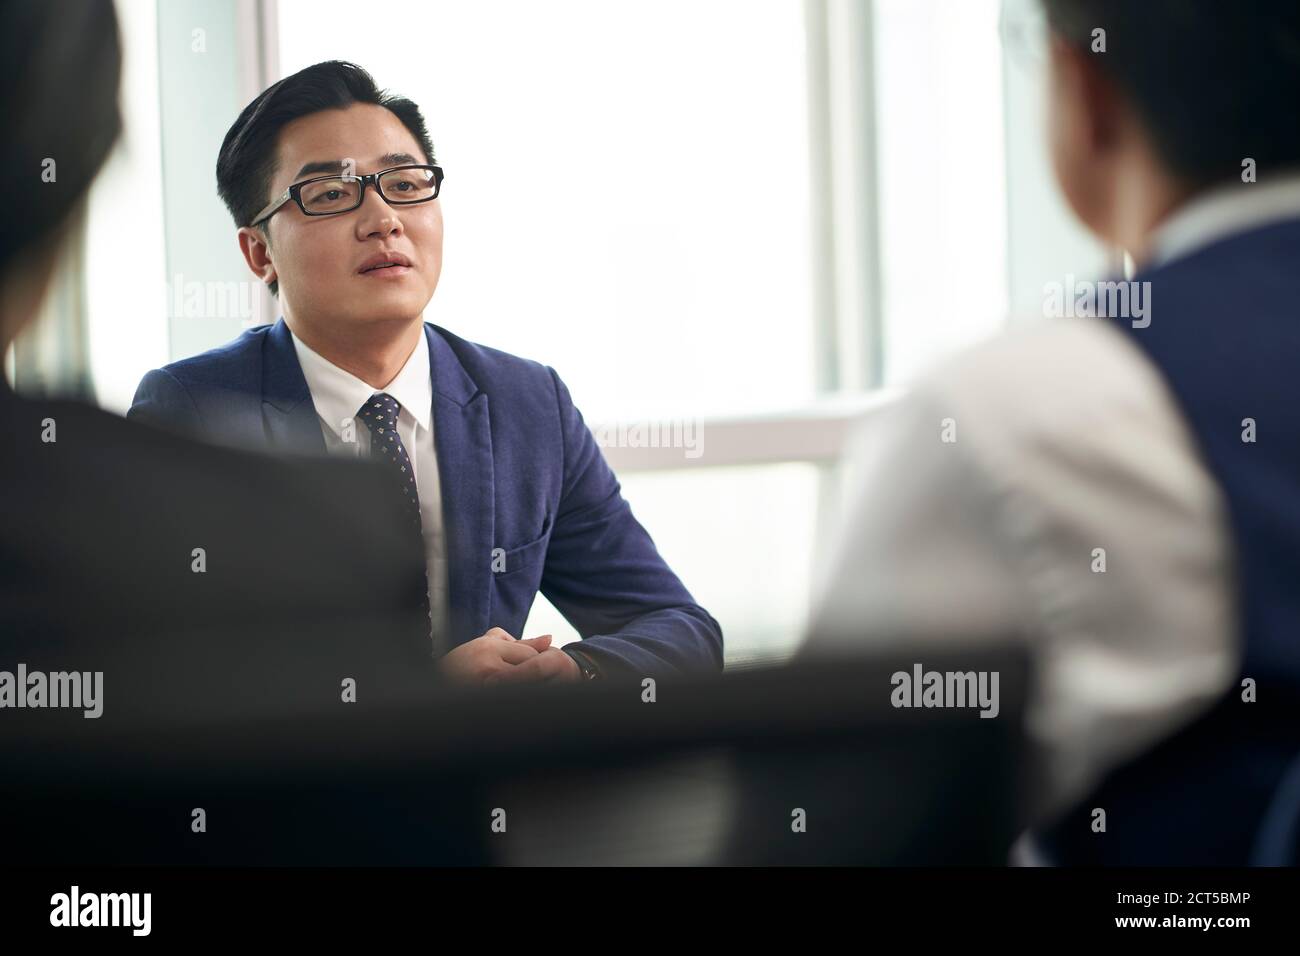 giovane uomo d'affari asiatico che parla con l'intervistatore durante l'intervista di lavoro Foto Stock